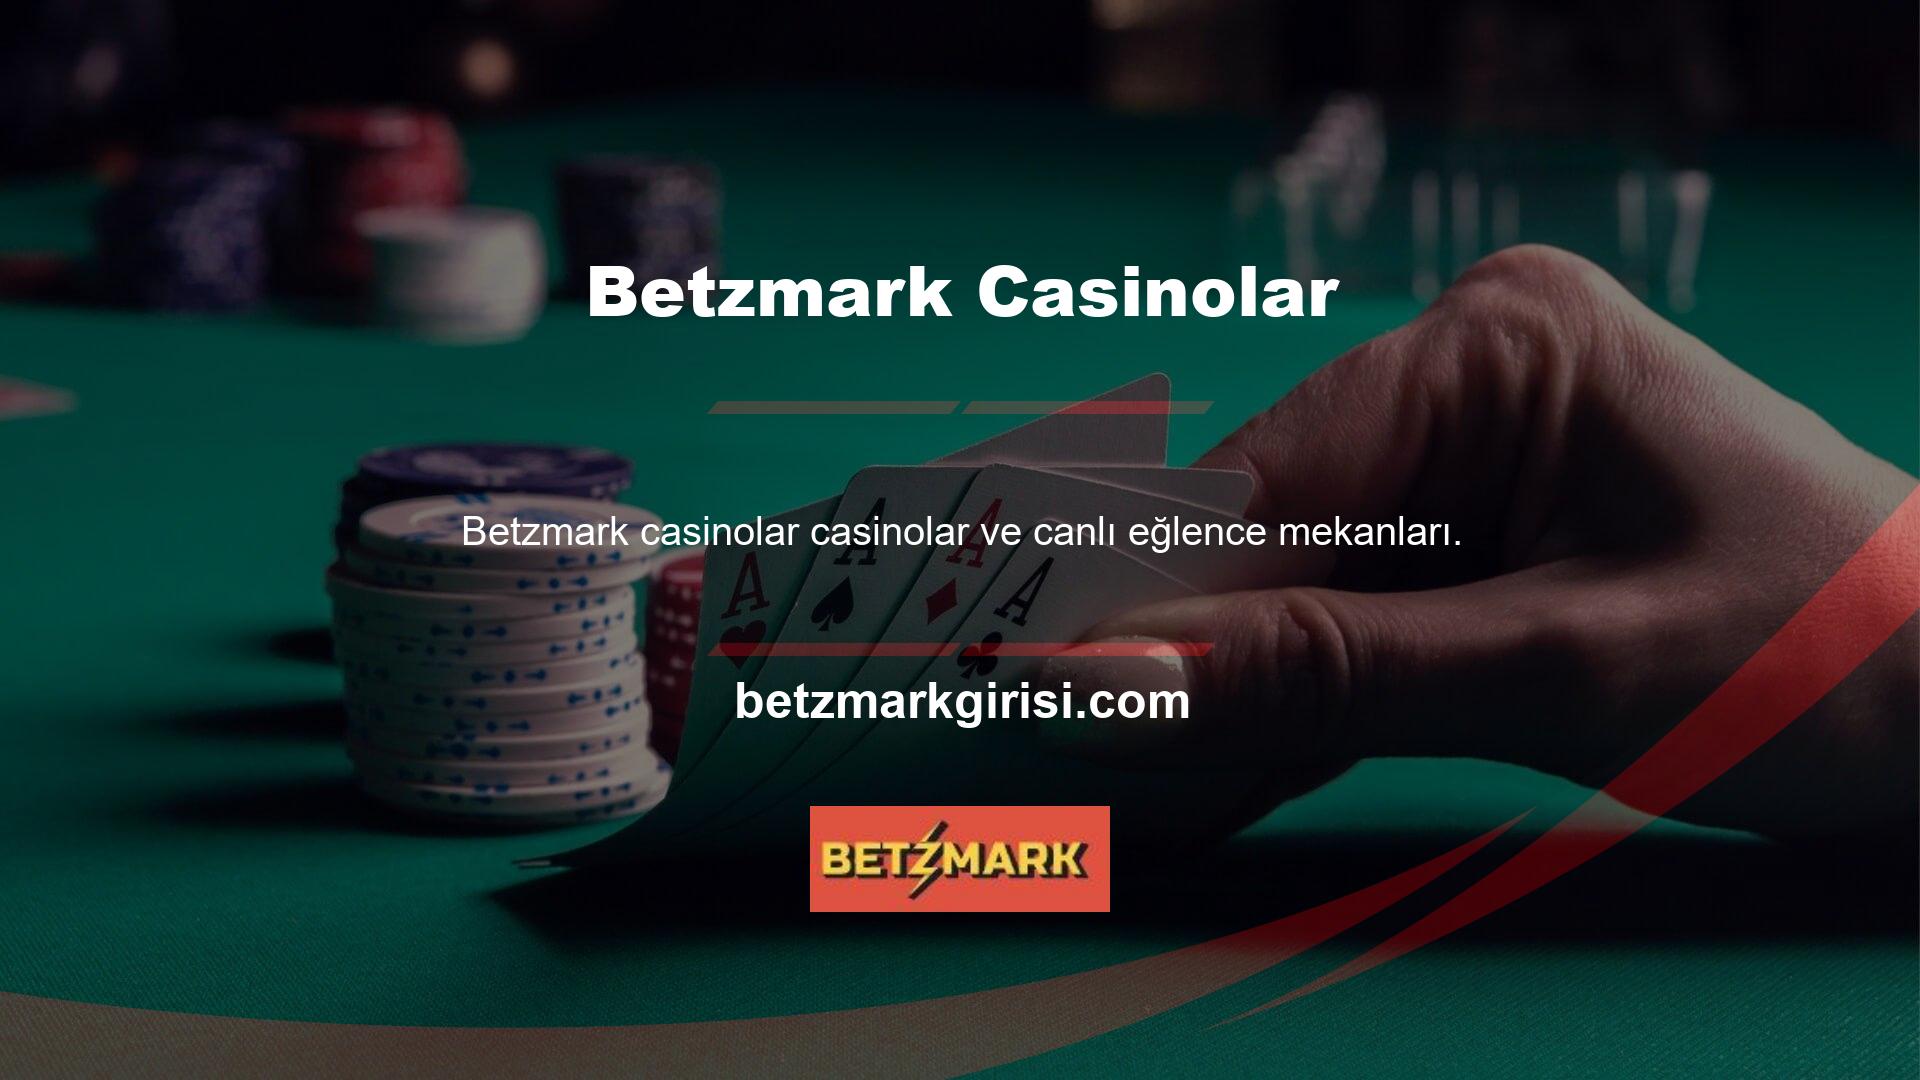 Bu sitede sunulan casino oyunları arasında blackjack, poker ve rulet gibi çeşitli oyunlar bulunmaktadır